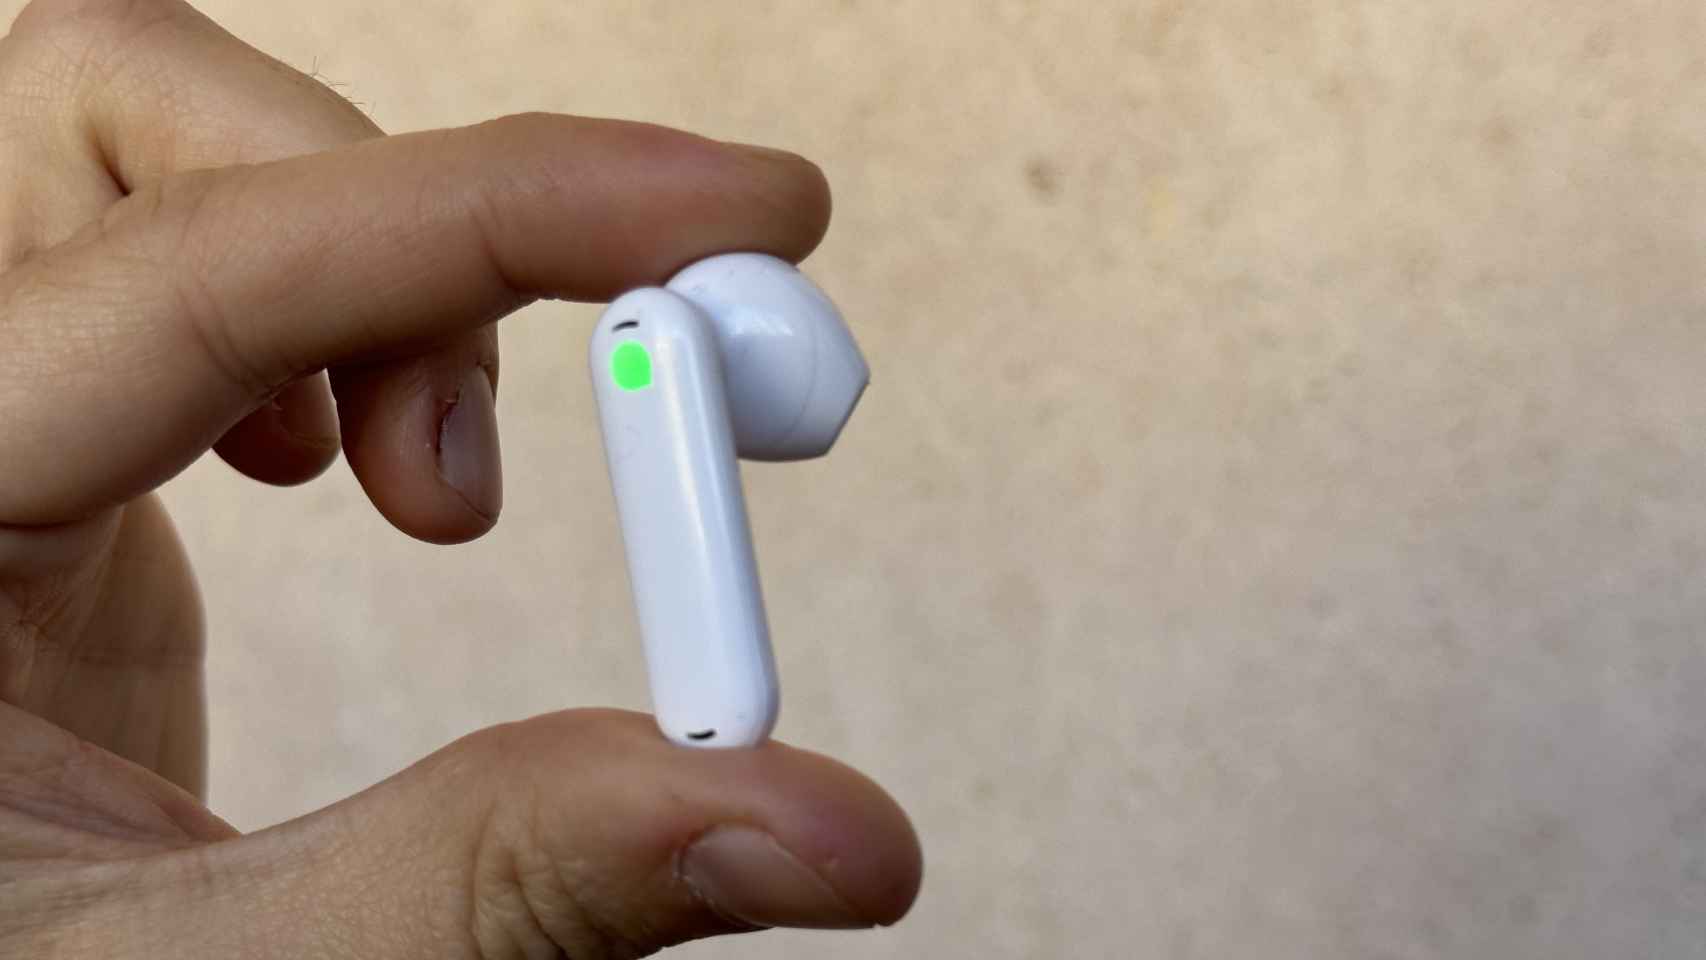 Estos auriculares permiten hablar 40 idiomas sin estudiar